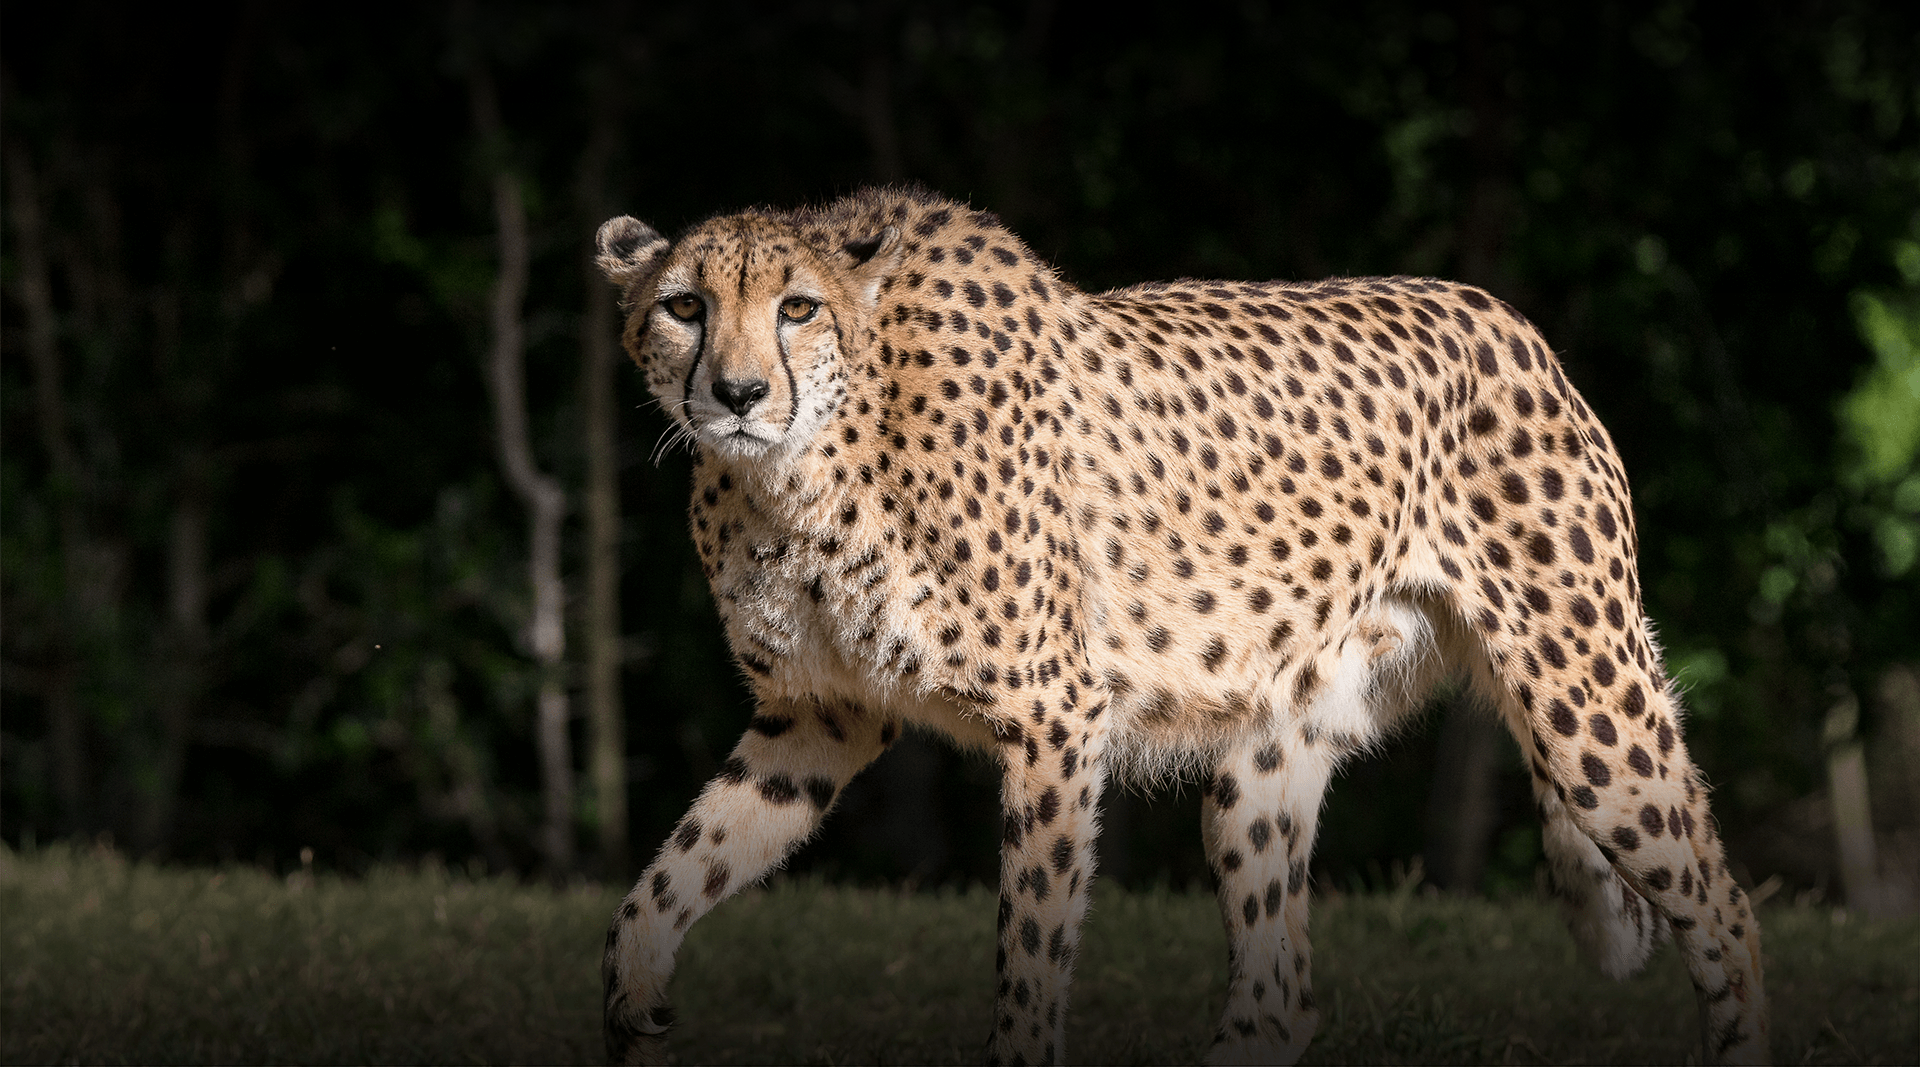 Cheetah walks left, looking at camera.